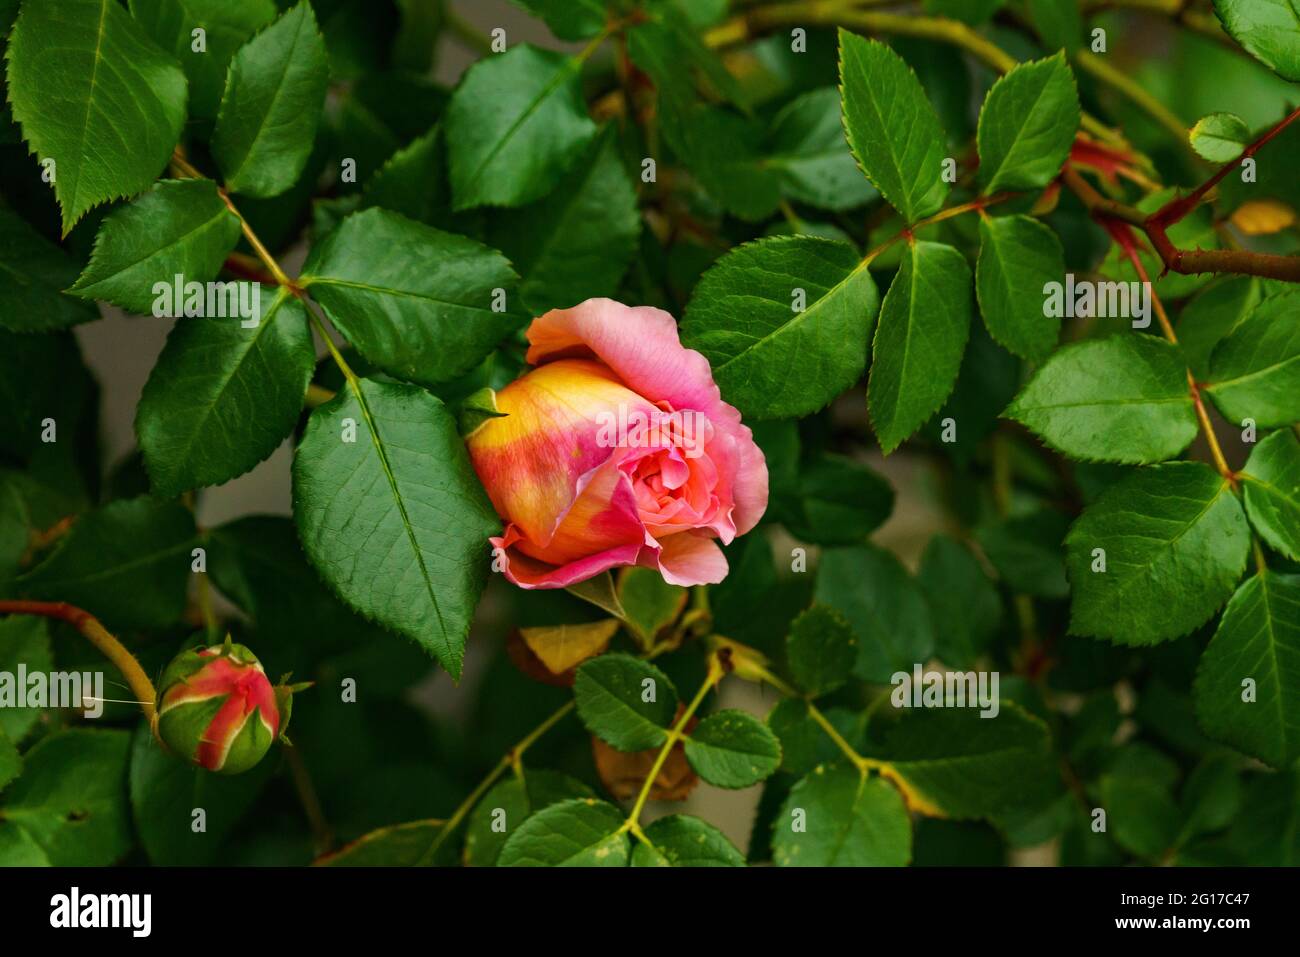 rote Rose am Rosenstock vor einer Hauswand, orange, rosa, gelb mehrfarbig im grünen Blättermeer. Morgentau auf Rosenknospe. Symbol für Liebe und Treue Stock Photo